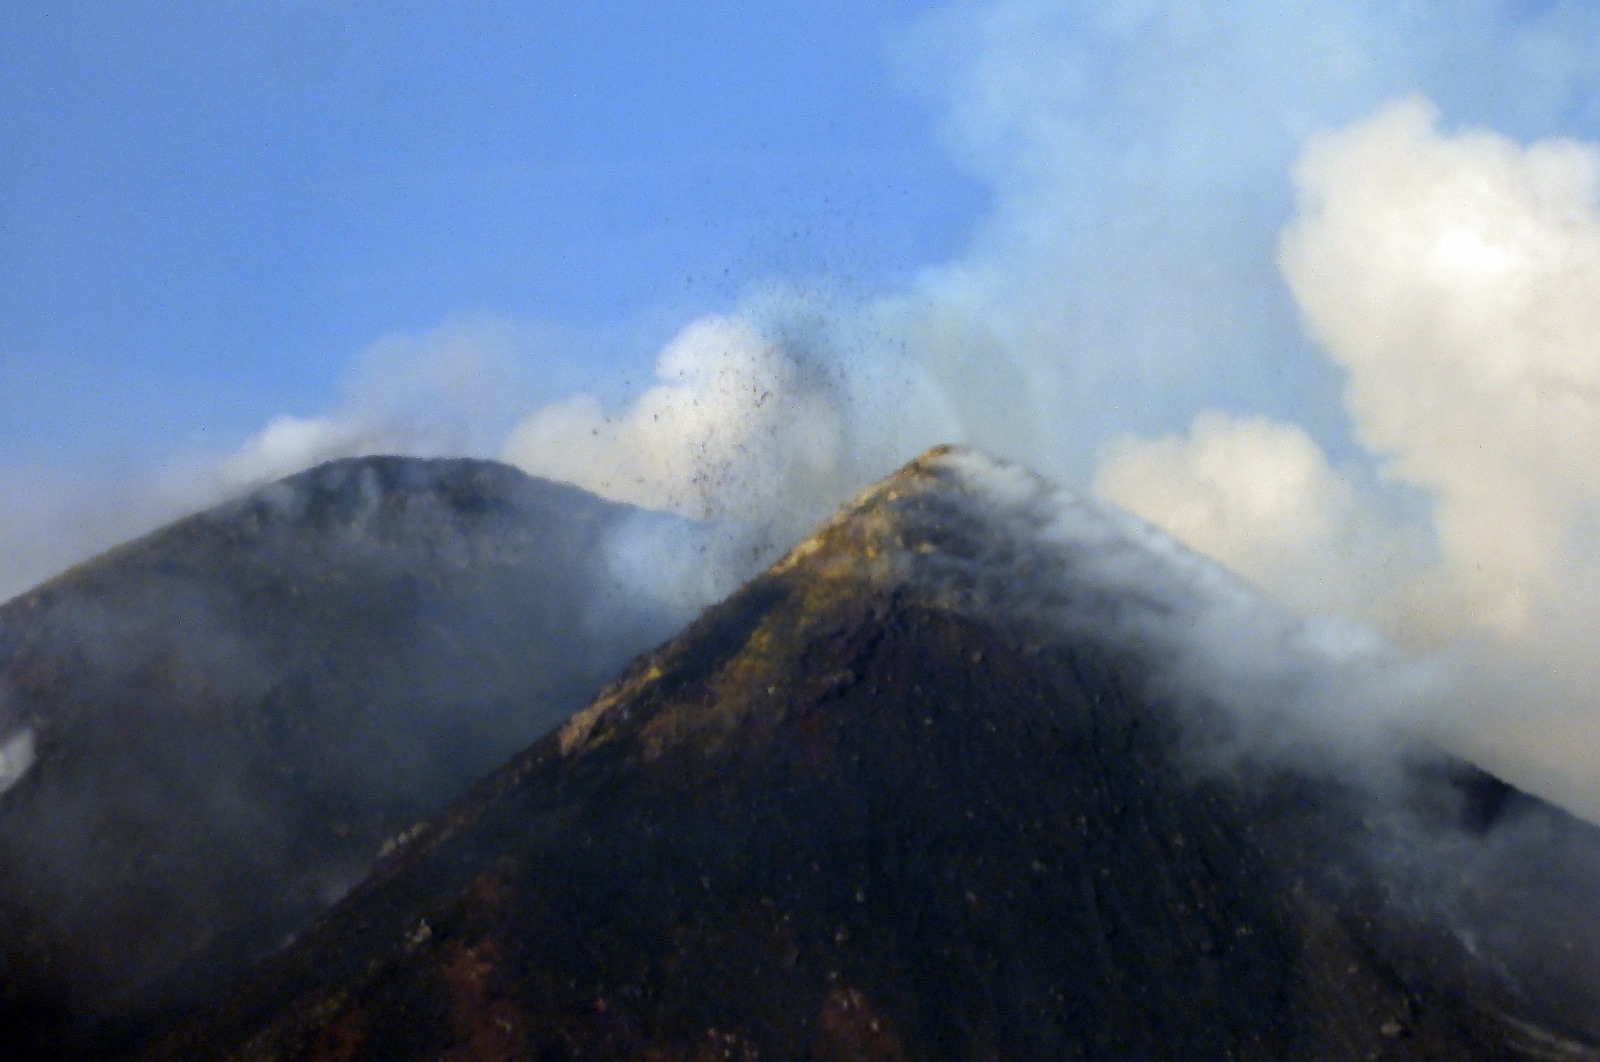 Etna in eruzione, trabocco lavico ed emissione di cenere